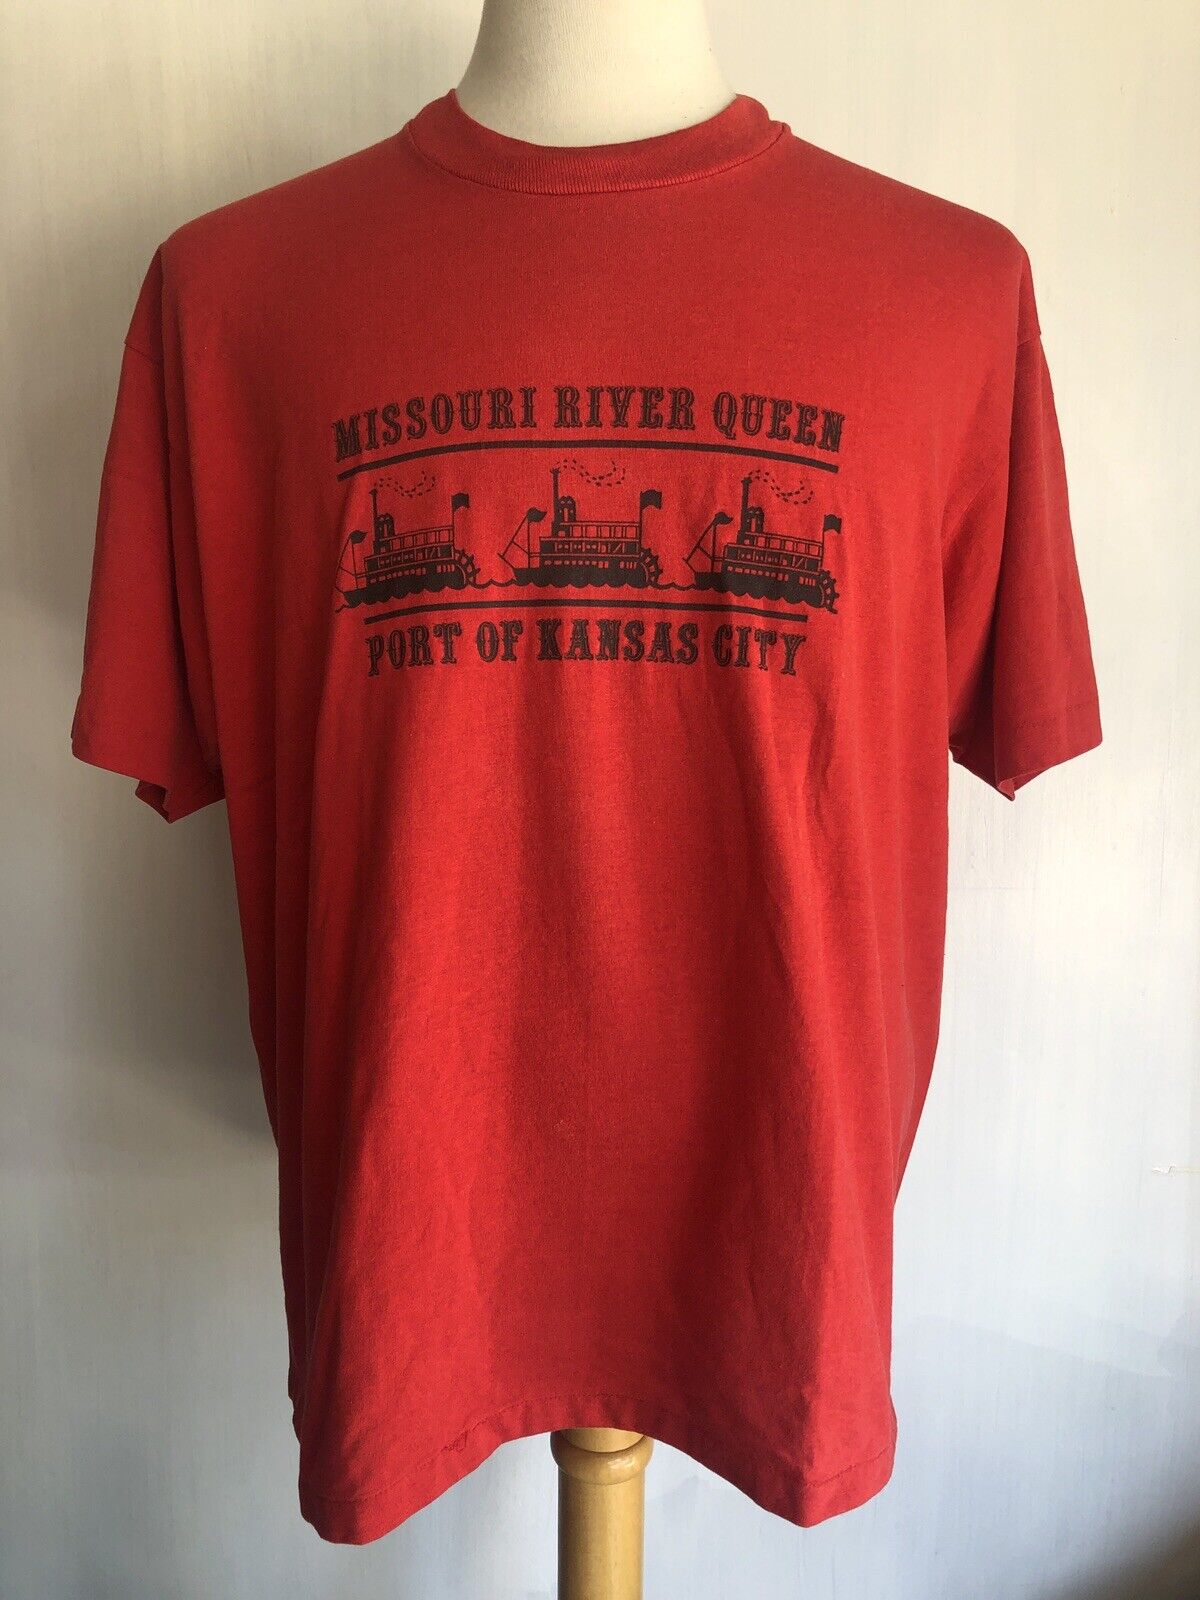 MISSOURI RIVER QUEEN Port of Kansas City Vintage 80s Screen Stars T-Shirt XL/2XL